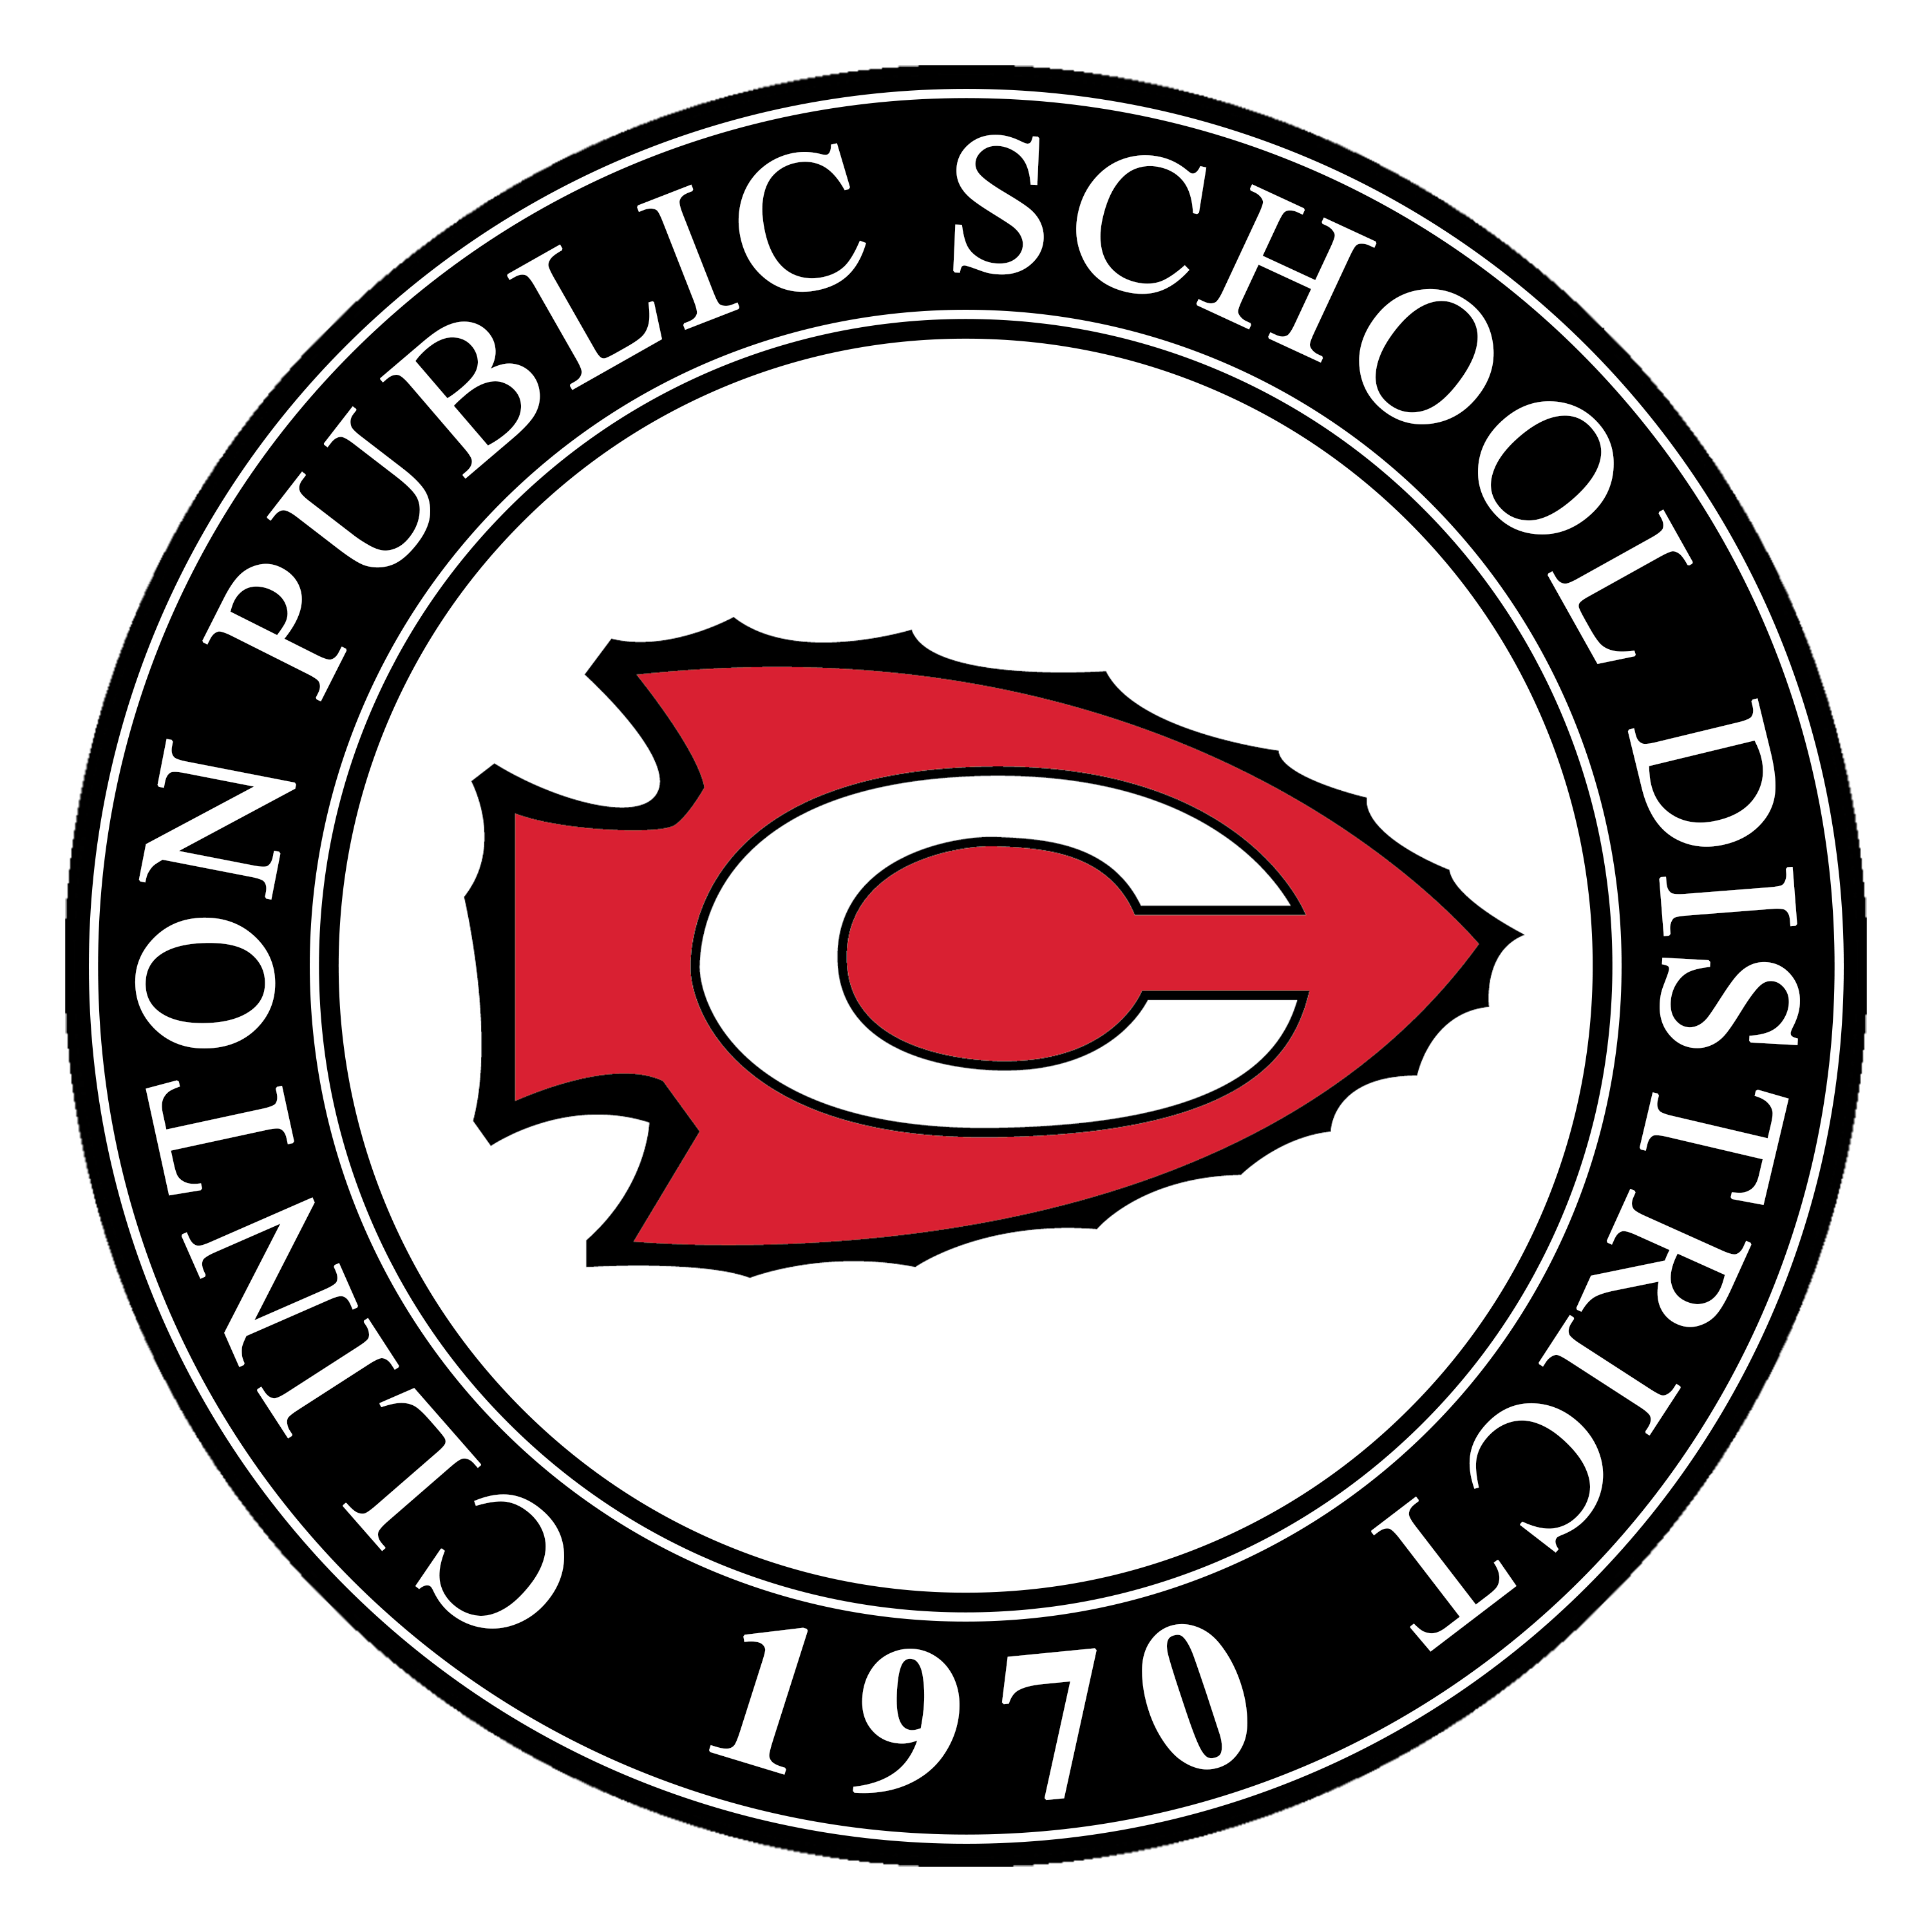 District logo 